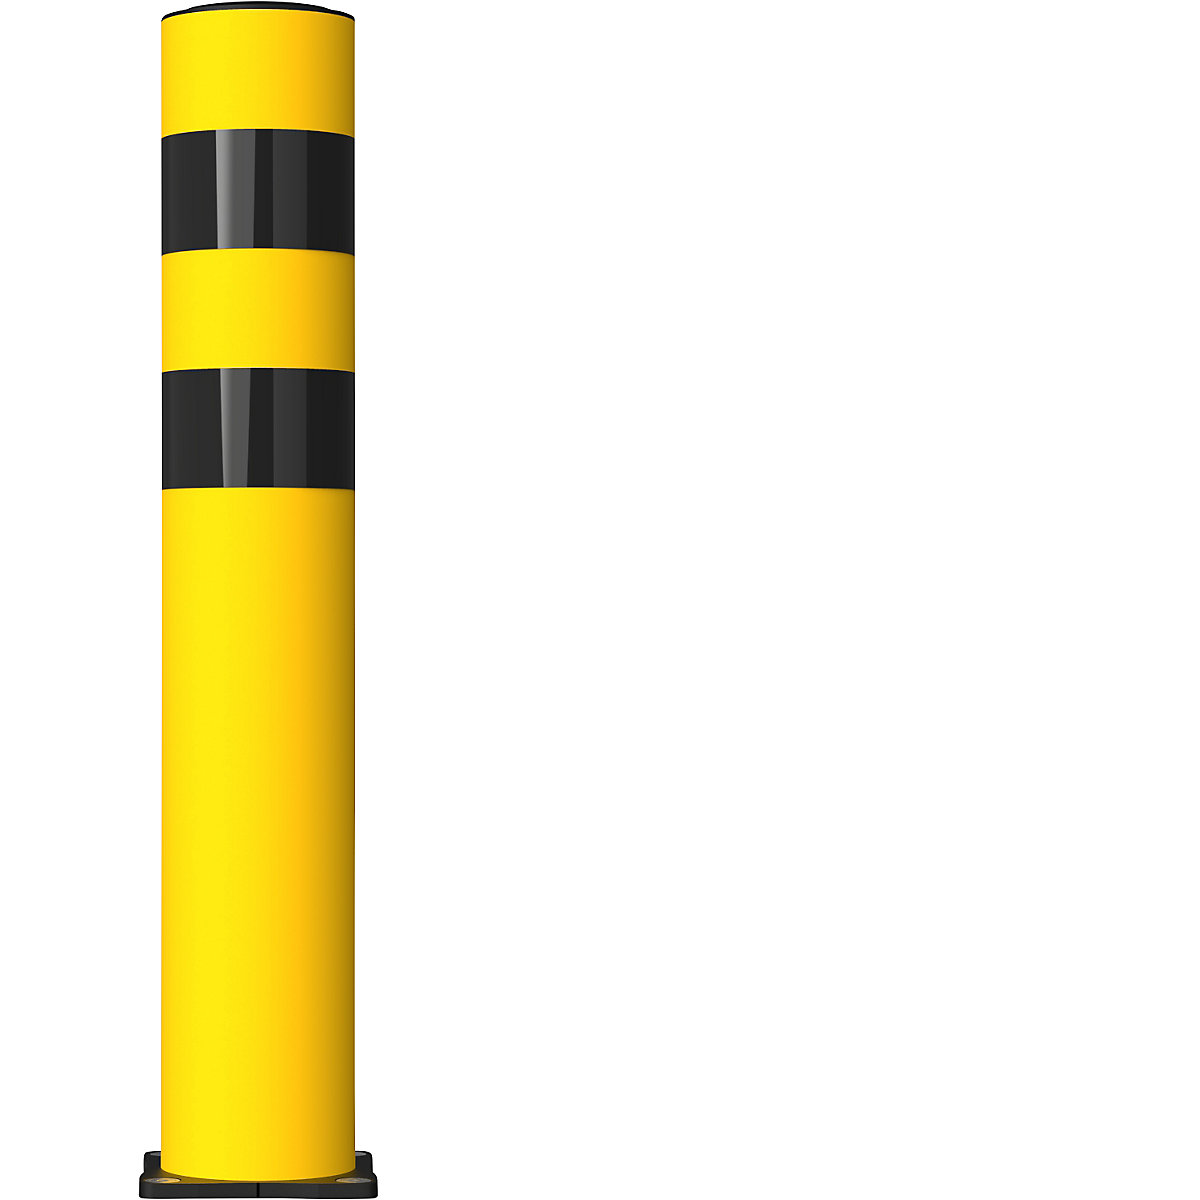 Poste de proteção contra impactos FLEX IMPACT, Ø 125 mm, altura 750 mm, placa de solo em aço inoxidável, amarela